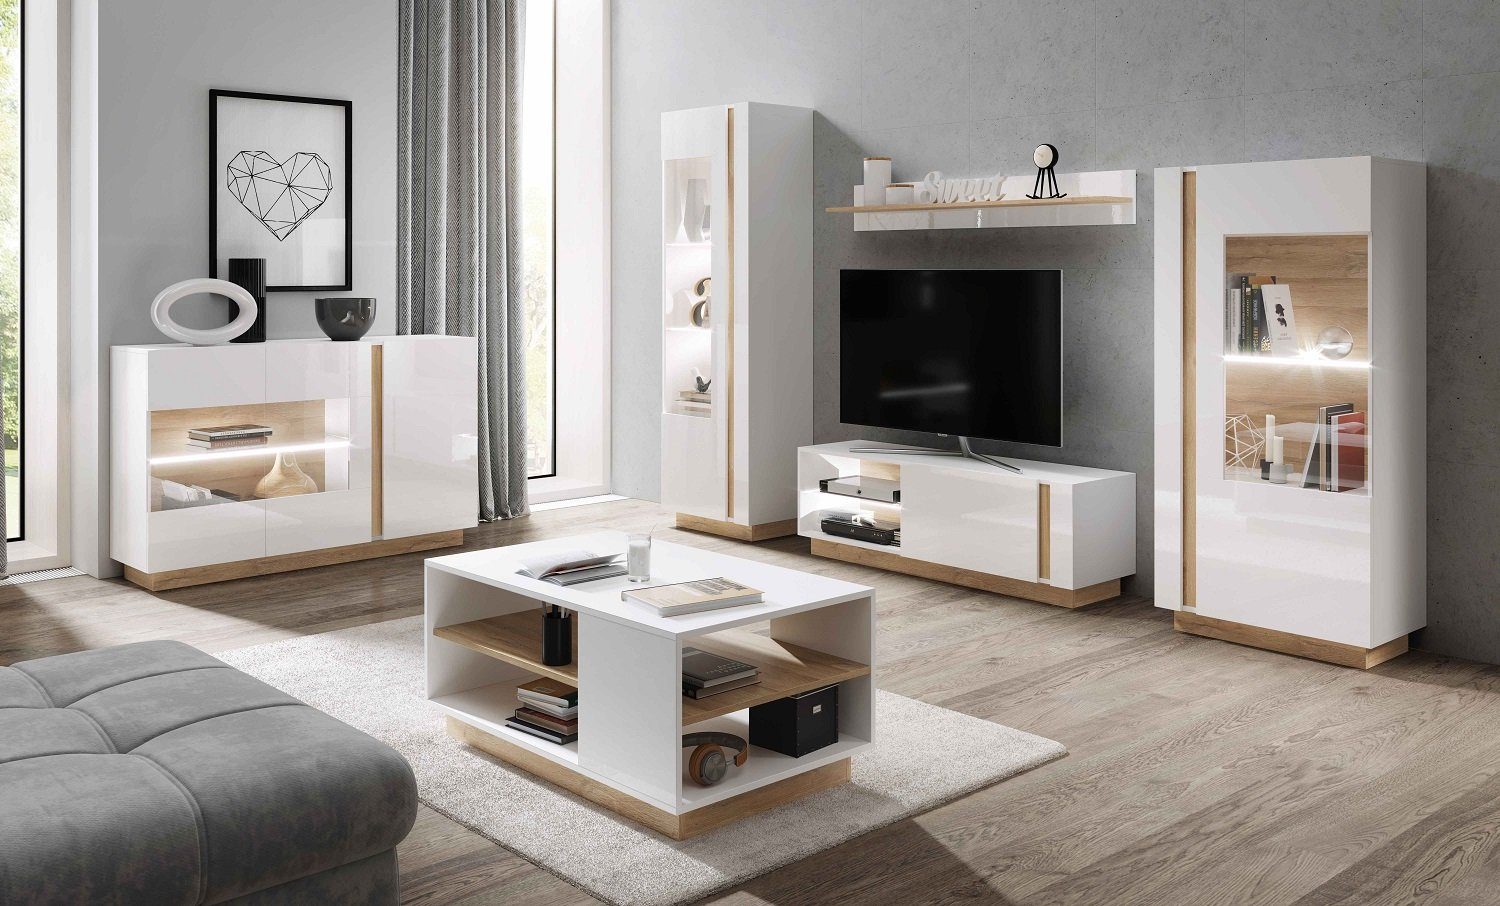 Holztisch x T60 in made EU Weiß/ Furnix B100 dekorativ, Couchtisch cm, eckiger 2 Ablagefächern Grandson, H45 Eiche MAIKKO x